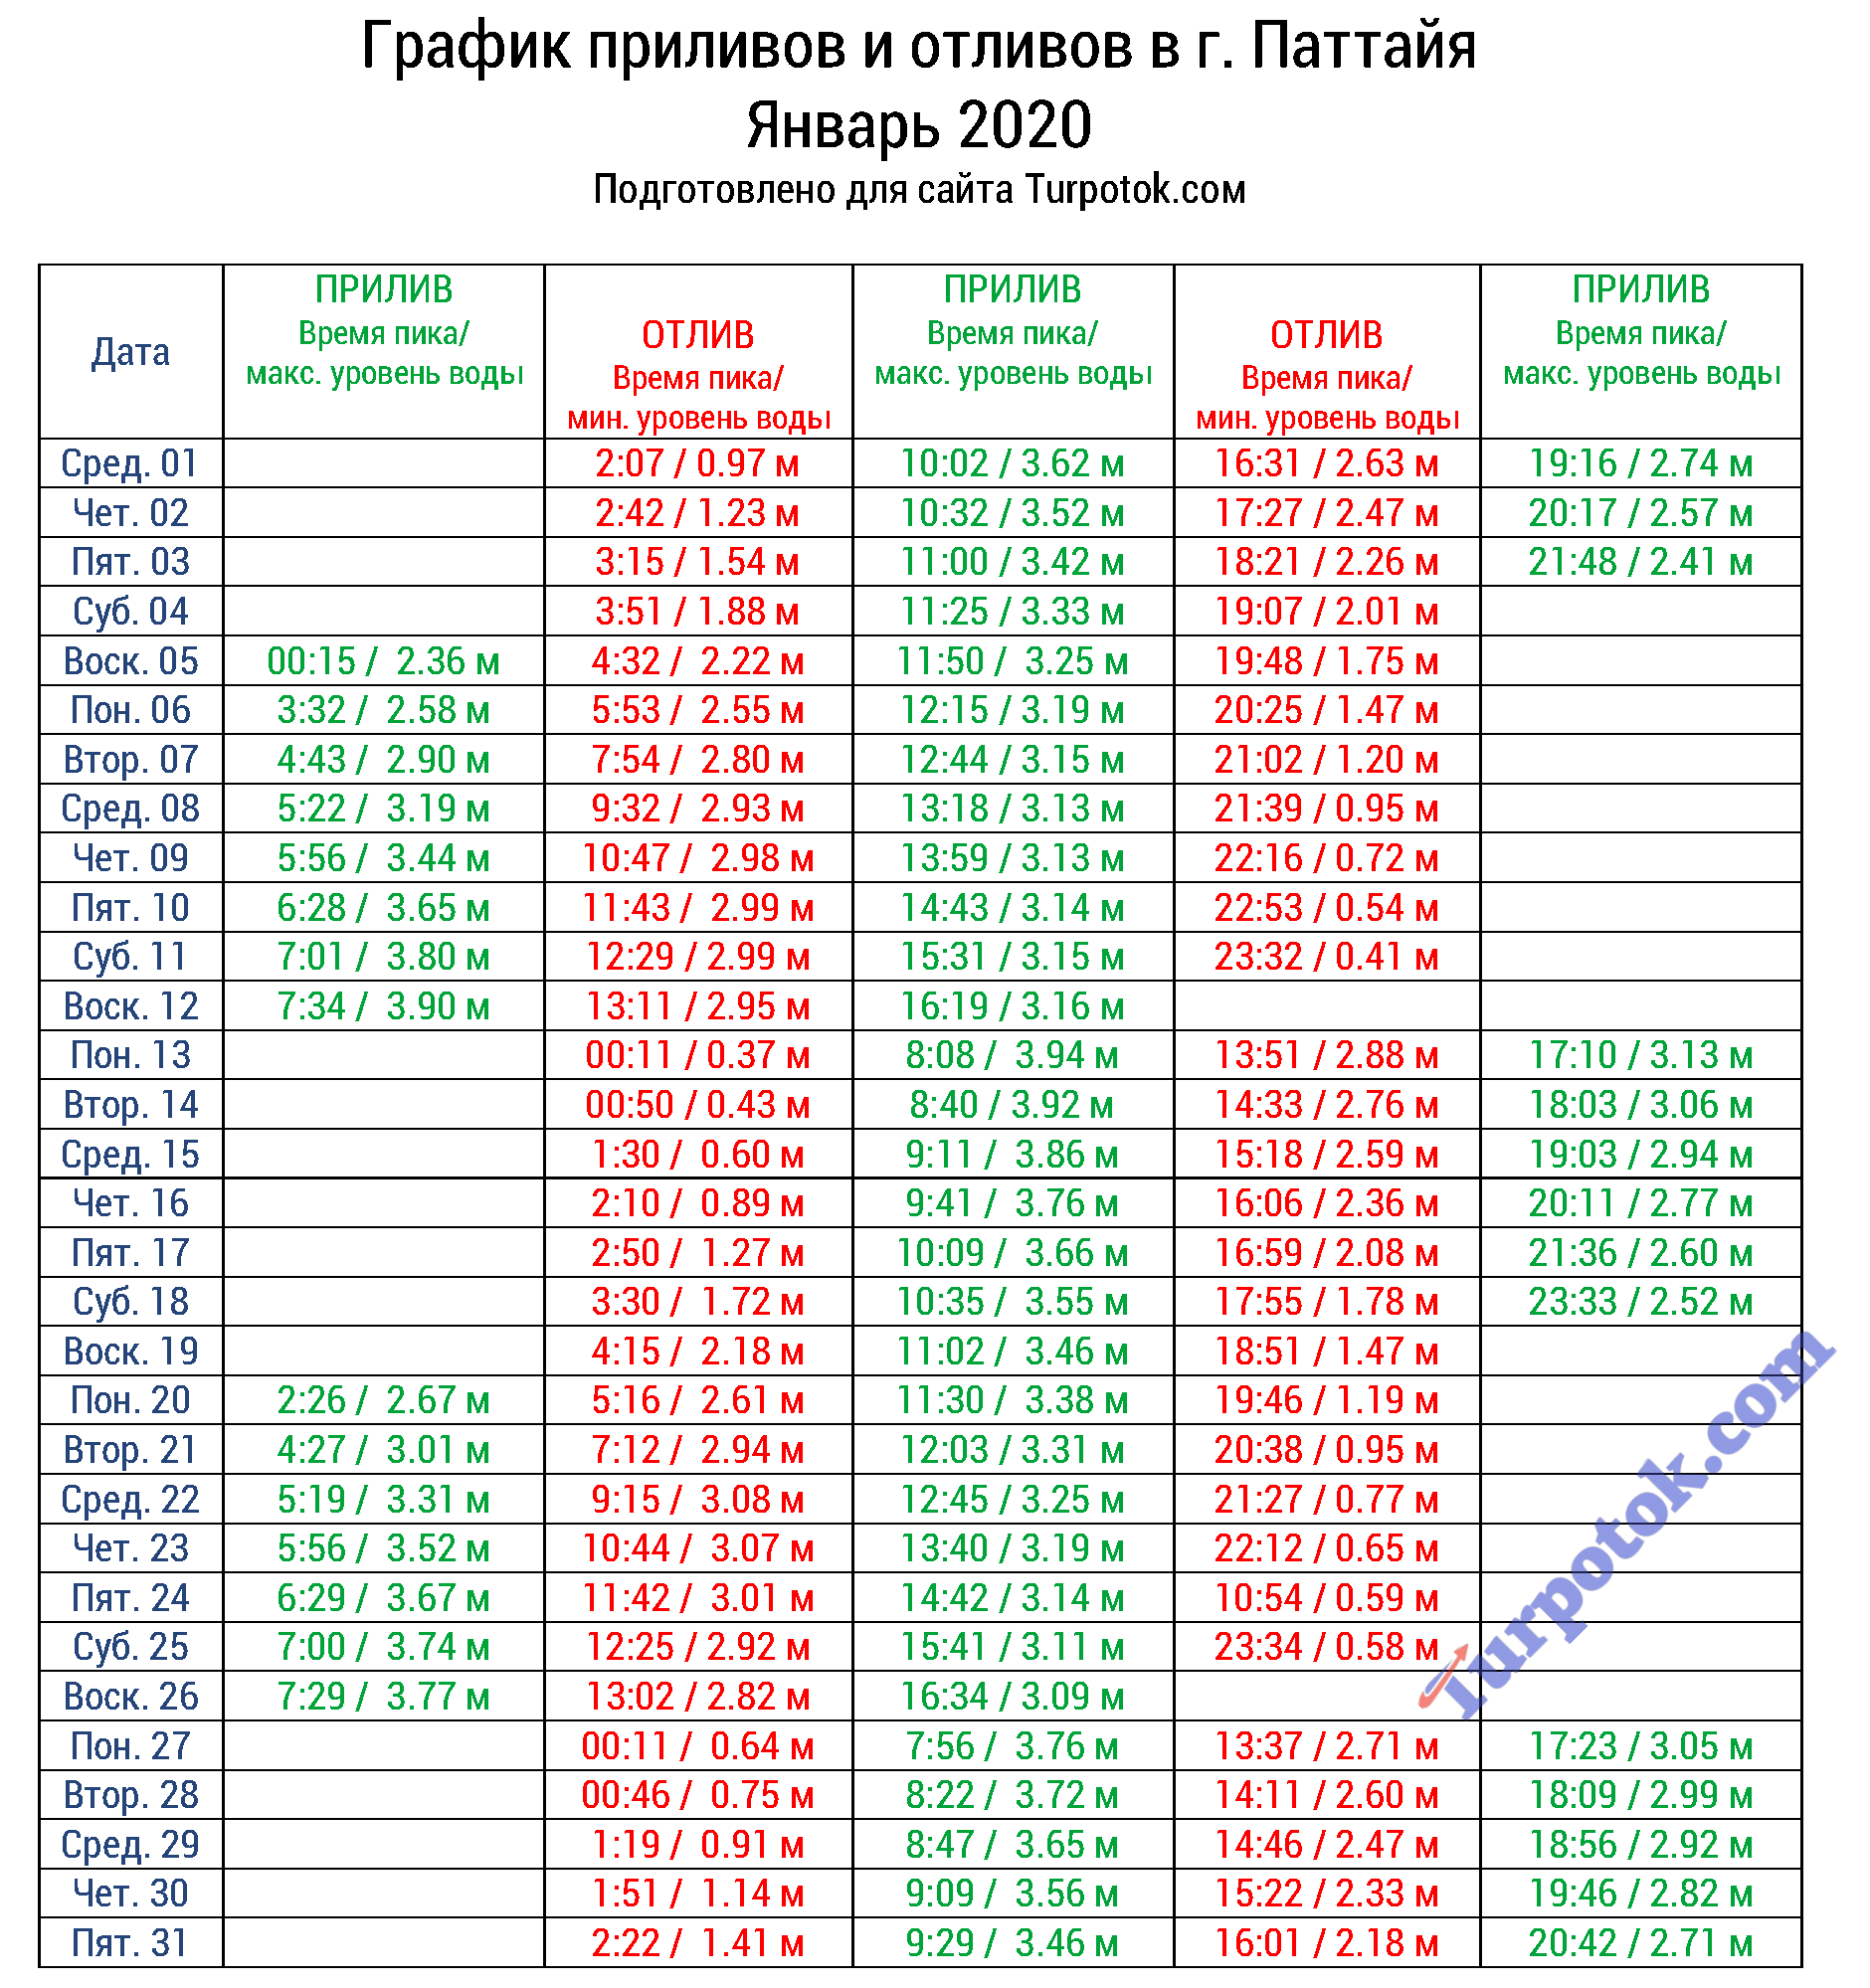 Таблица с расписанием отливов в Паттайе на январь 2020 г.